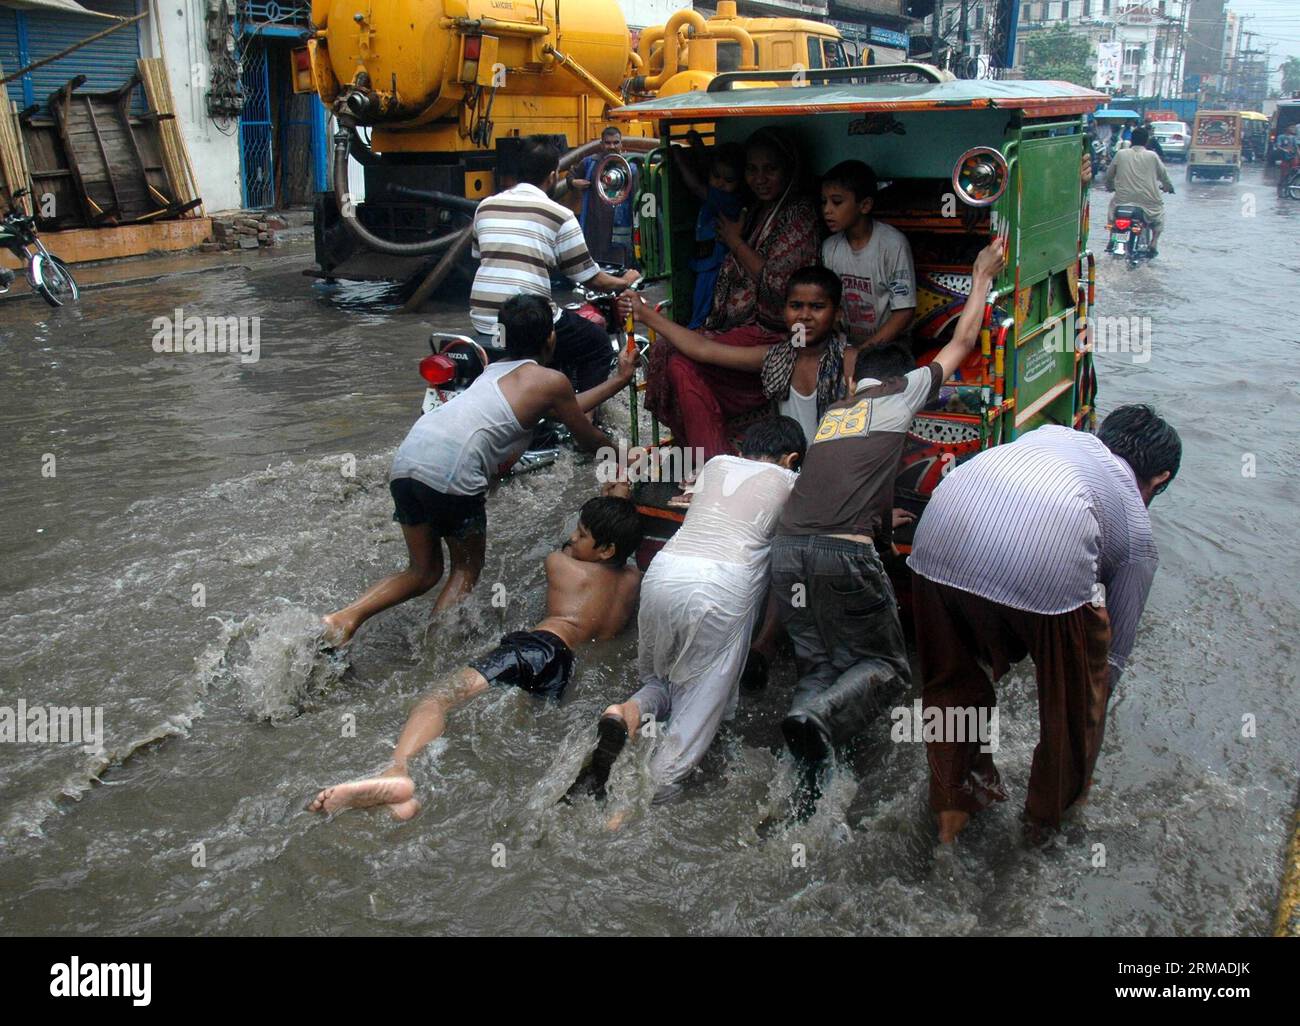 (140703) -- LAHORE, 3 juillet 2014 (Xinhua) -- des enfants poussent un pousse-pousse automatique sur une route inondée sous de fortes pluies à Lahore, dans l'est du Pakistan, le 3 juillet, 2014.(Xinhua/Sajjad) PAKISTAN-LAHORE-PLUIE LOURDE PUBLICATIONxNOTxINxCHN Lahore juillet 3 2014 des enfants de XINHUA poussent vers un pousse-pousse de voiture SUR une route inondée pendant de fortes pluies dans l'est du Pakistan S Lahore juillet 3 2014 XINHUA Sajjjad Pakistan Lahore pluie lourde PUBLICATIONxNOTxINxCHN Banque D'Images